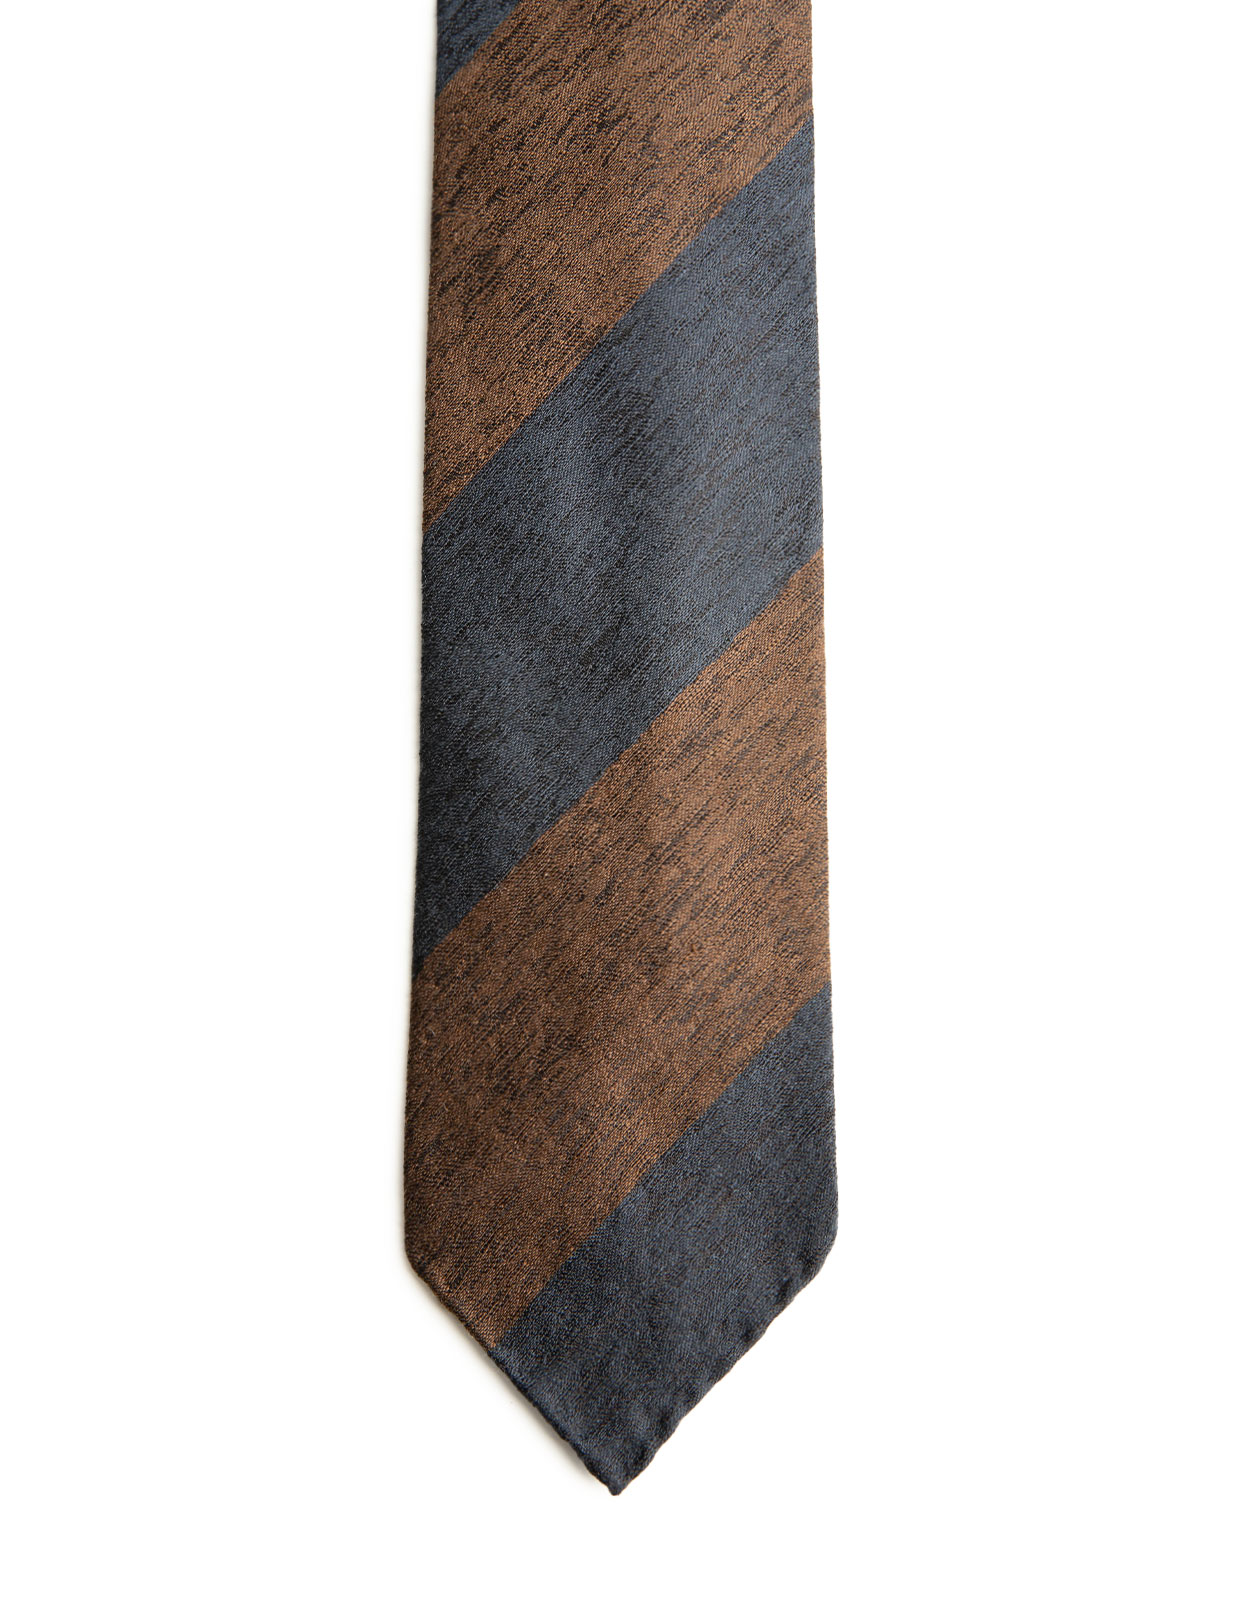 Untipped Wool & Silk Tie Brown/Navy Block Str